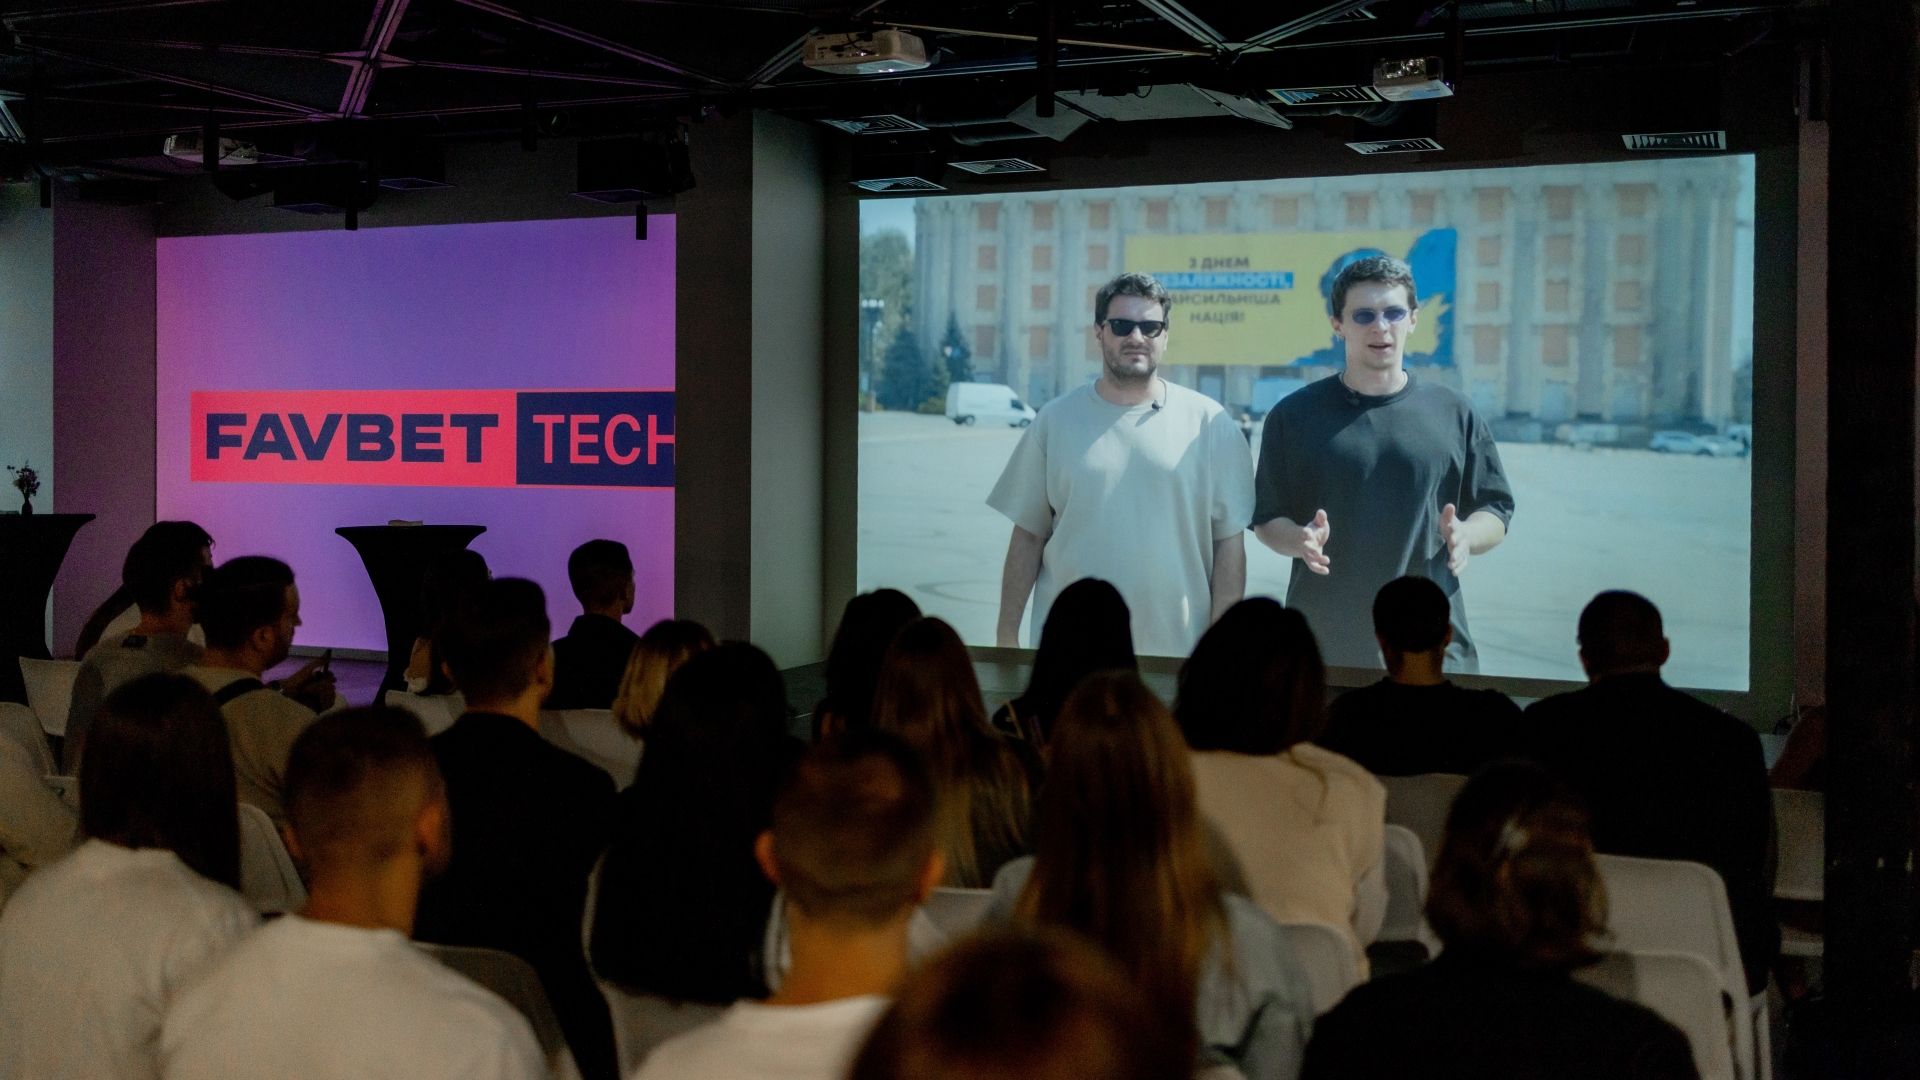 "Закрыл раунд" и FAVBET Tech презентовали фильм об IT-кластере Харькова в военное время